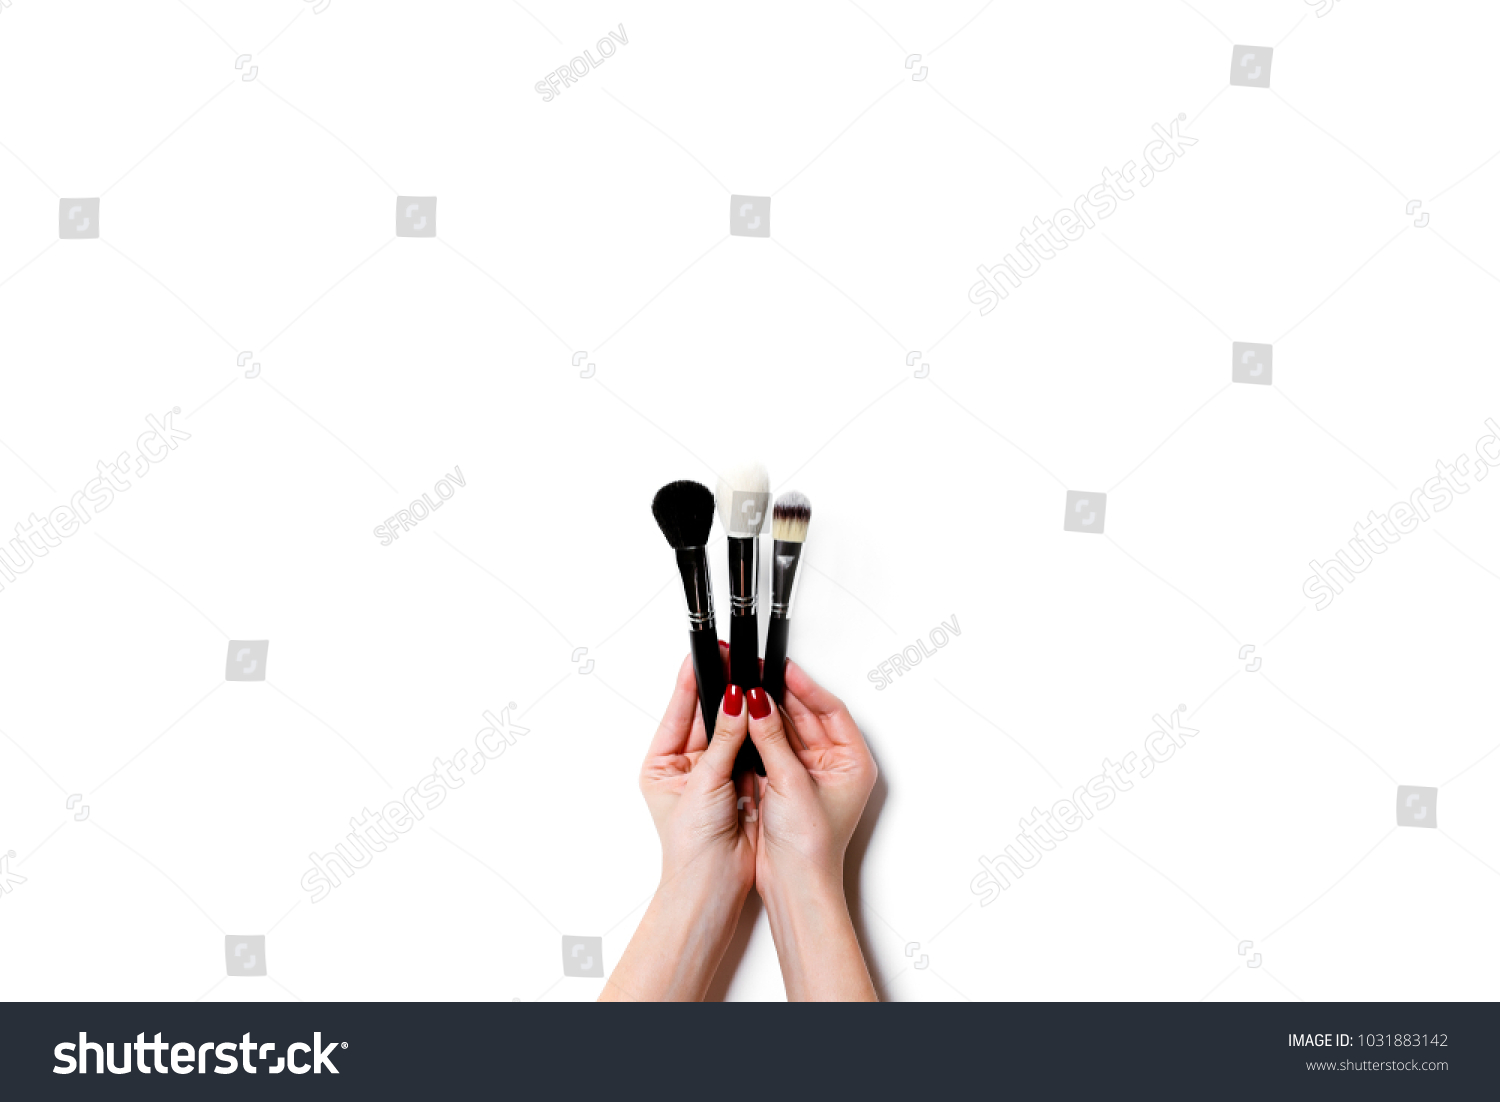 Female hand holding professional make-up brushe isolated on white background #1031883142